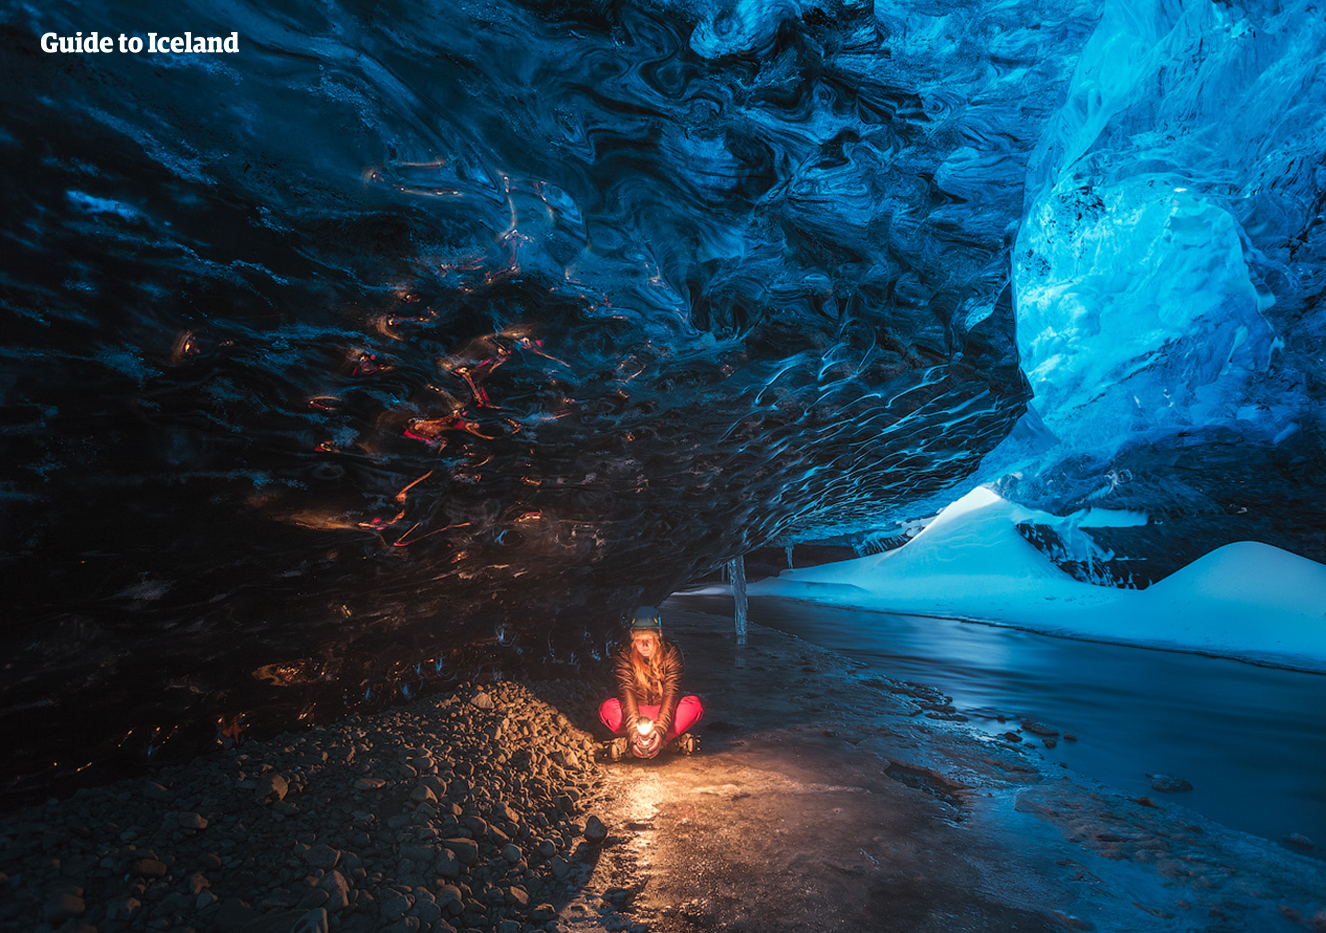 Explorar una cueva de hielo natural es una experiencia única que solo está disponible entre noviembre y marzo.